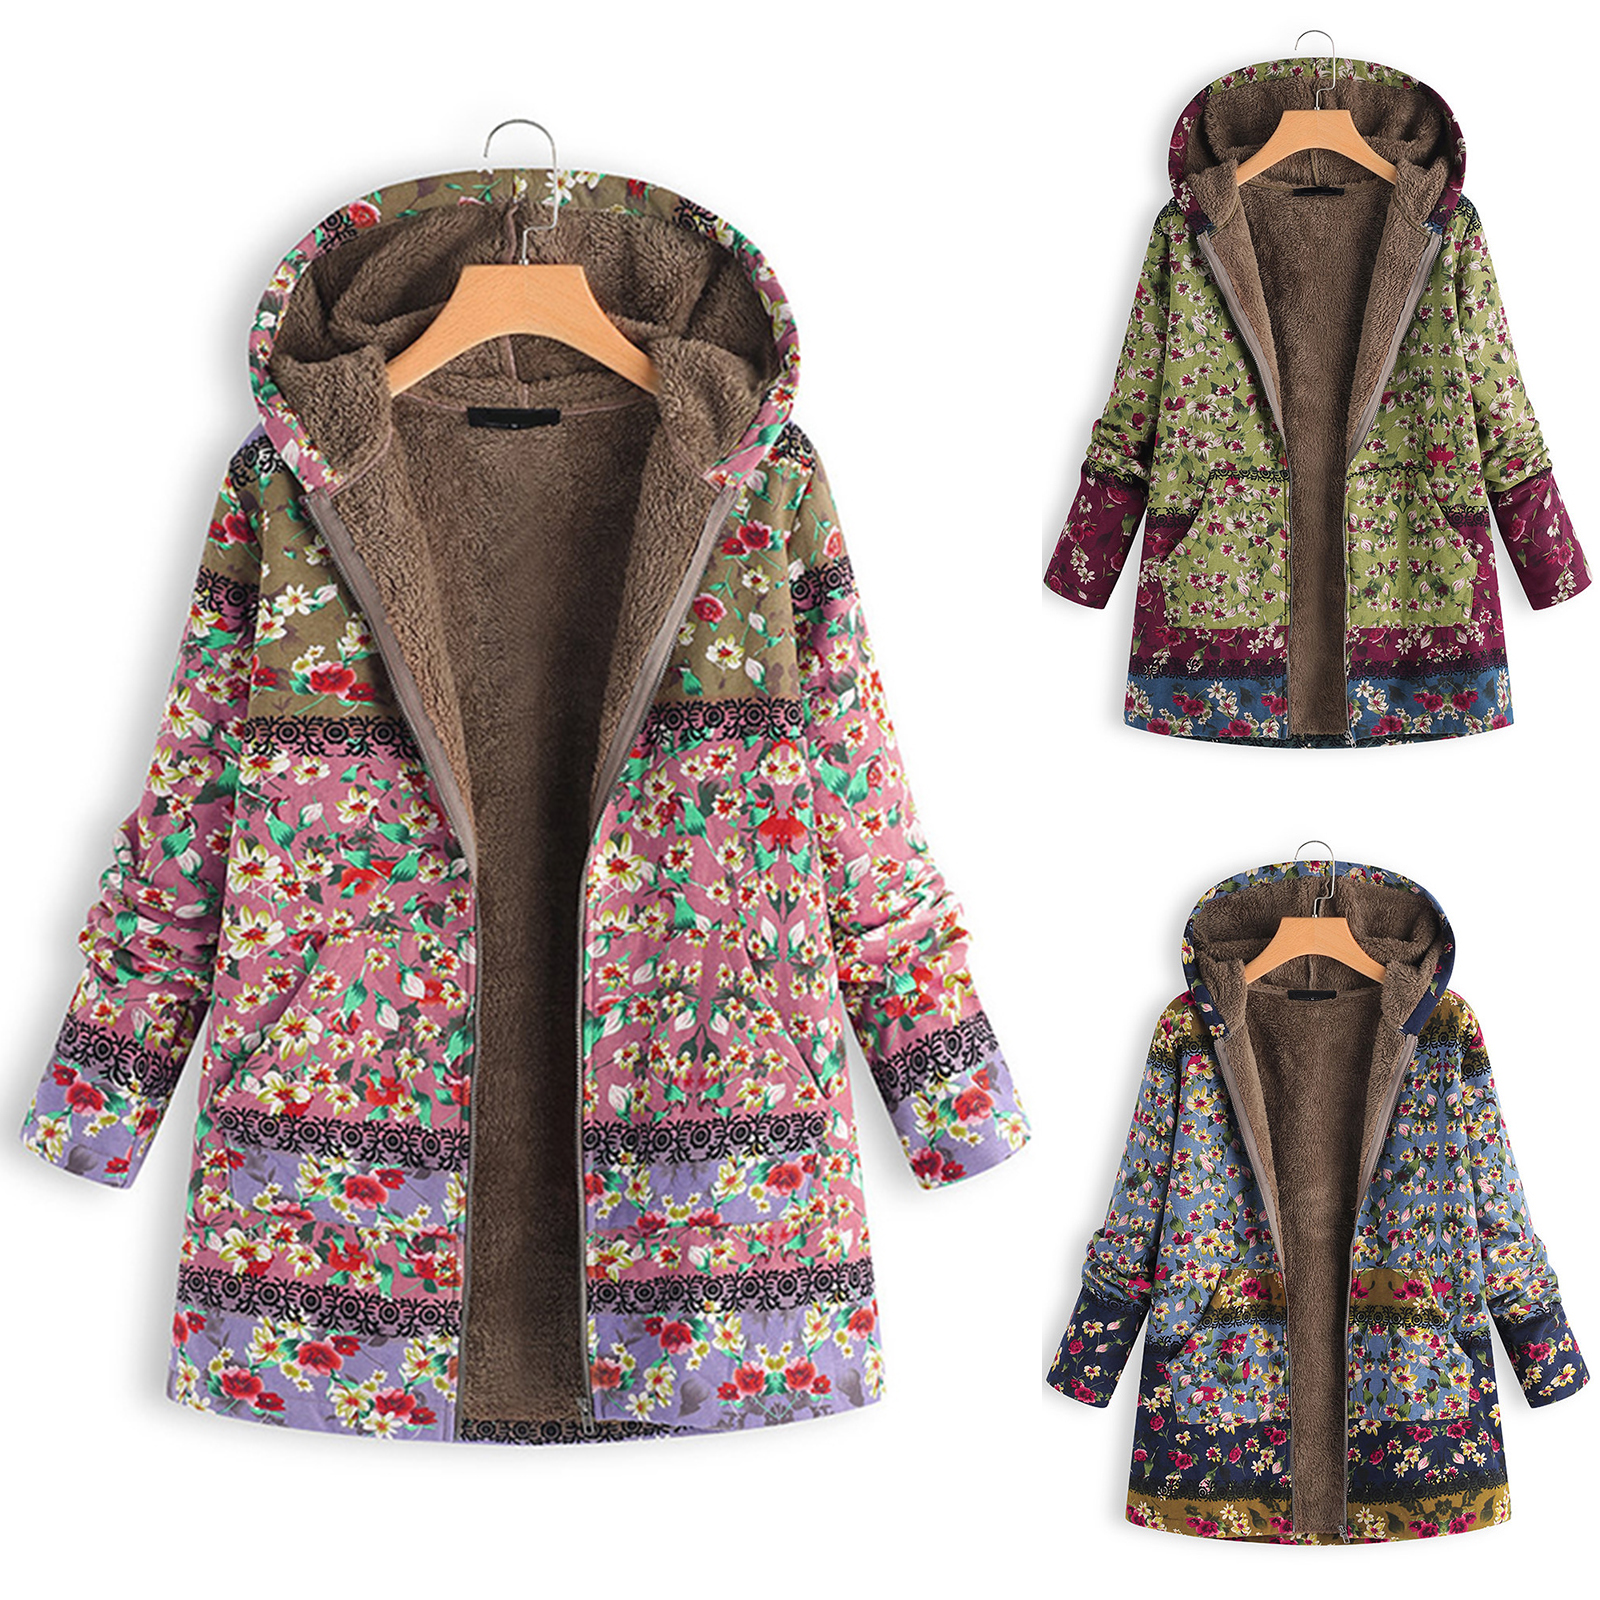 2021 Hot Sale Womens Coat Ladies Long Sleeve Jacket Winter Warm Floral Print Hooded Vintage Overcoat - image 3 of 8